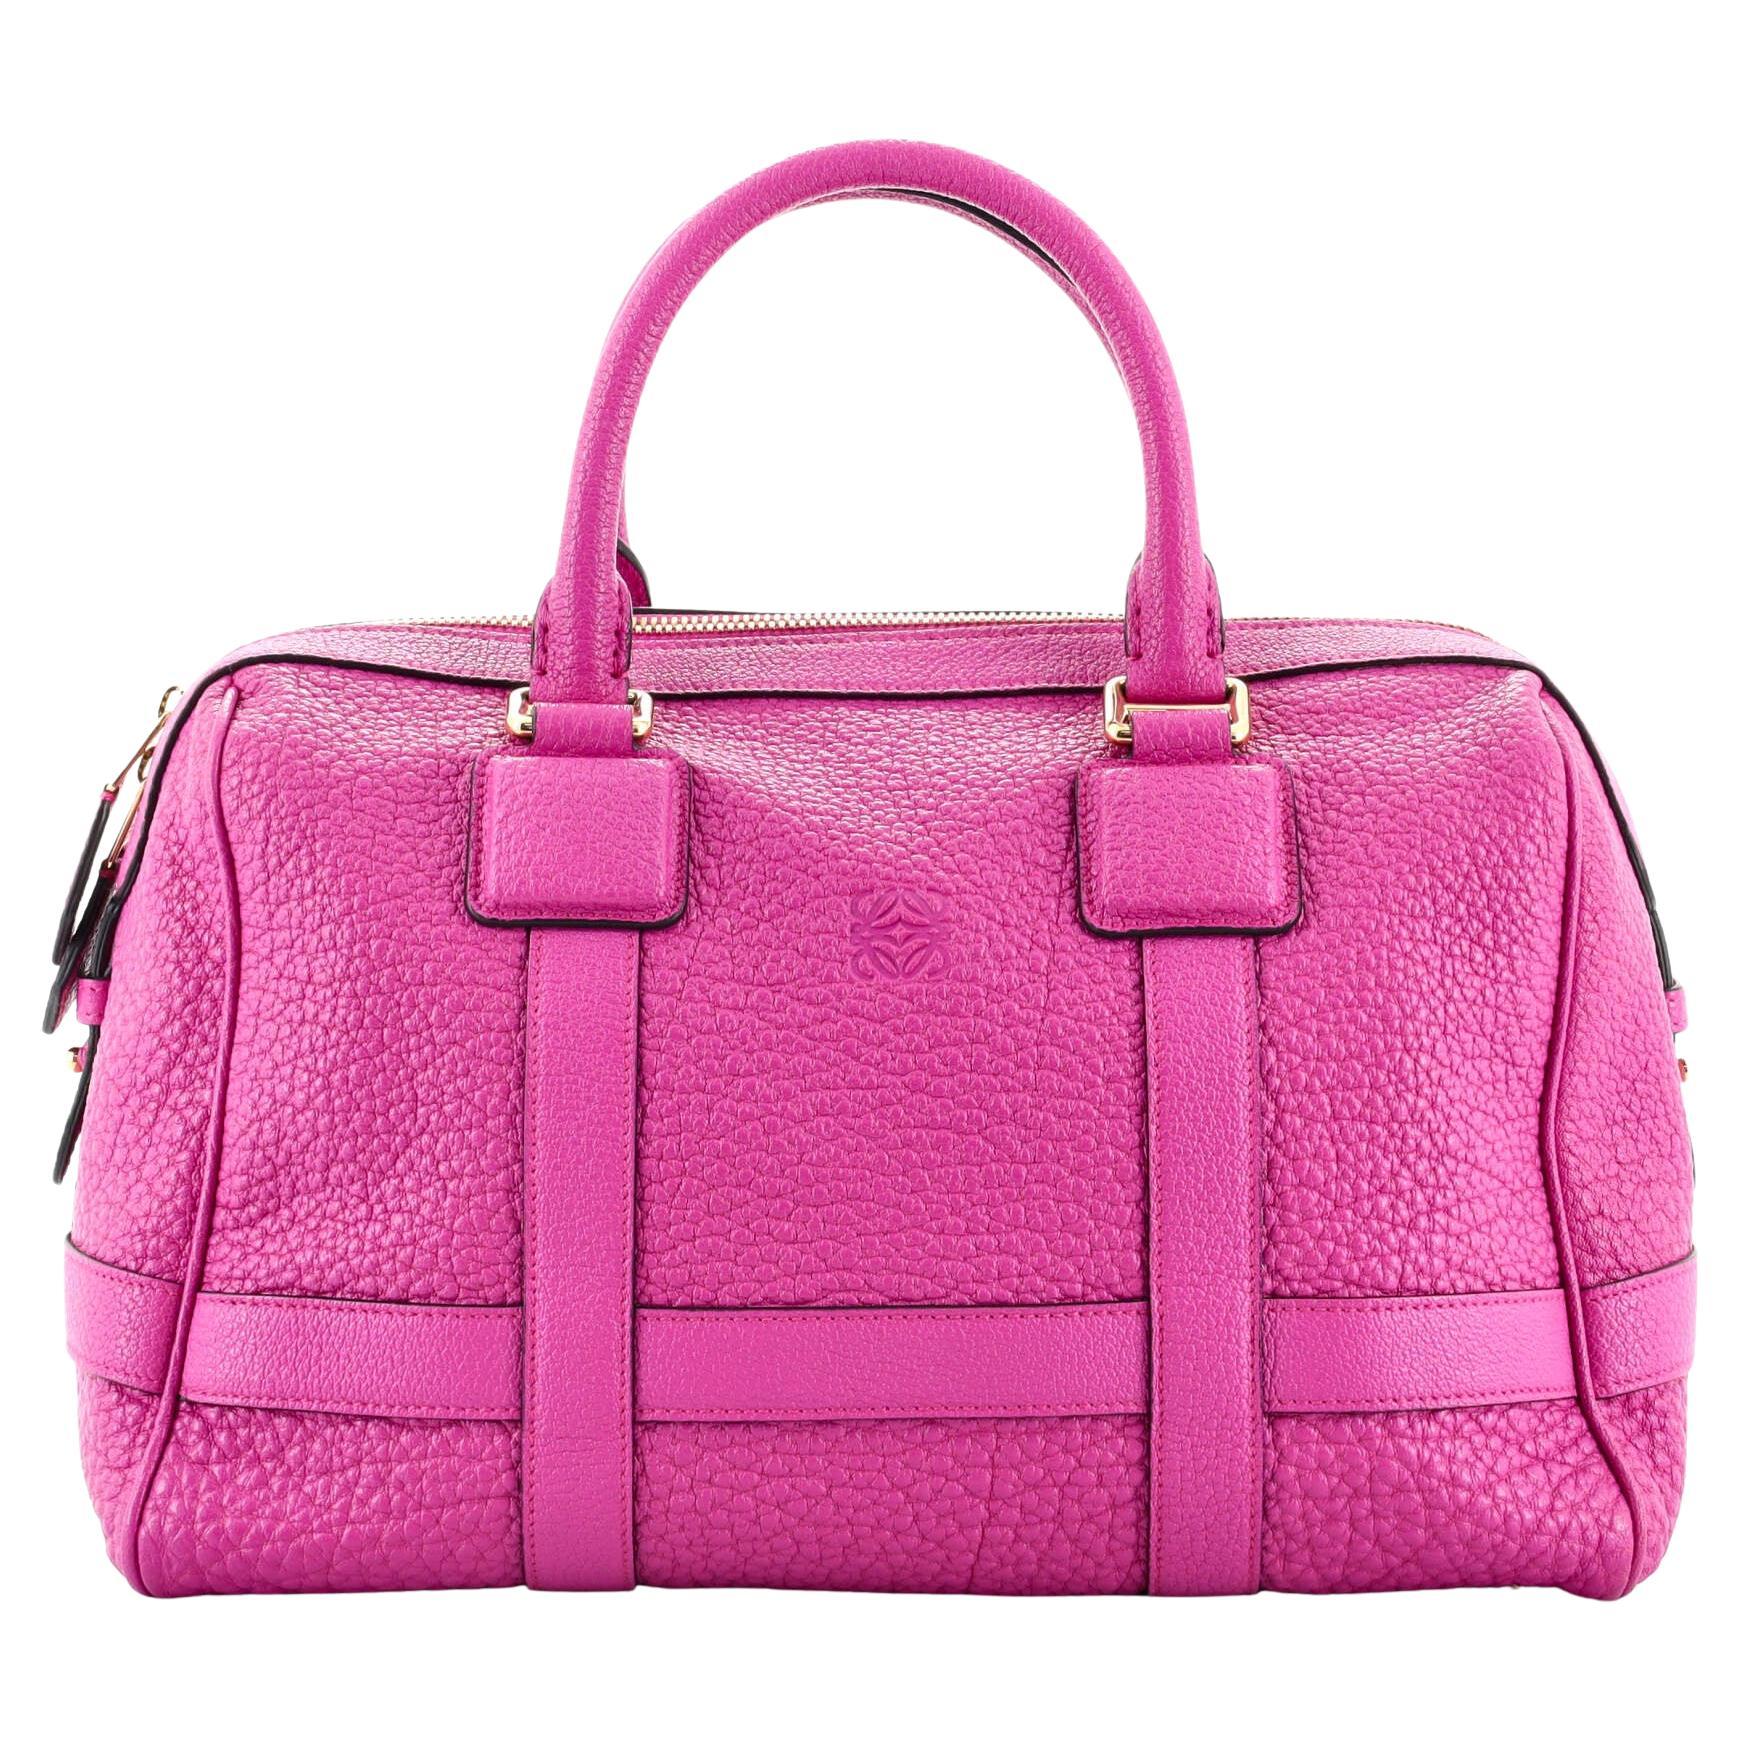 Loewe Paseo Handbag Leather